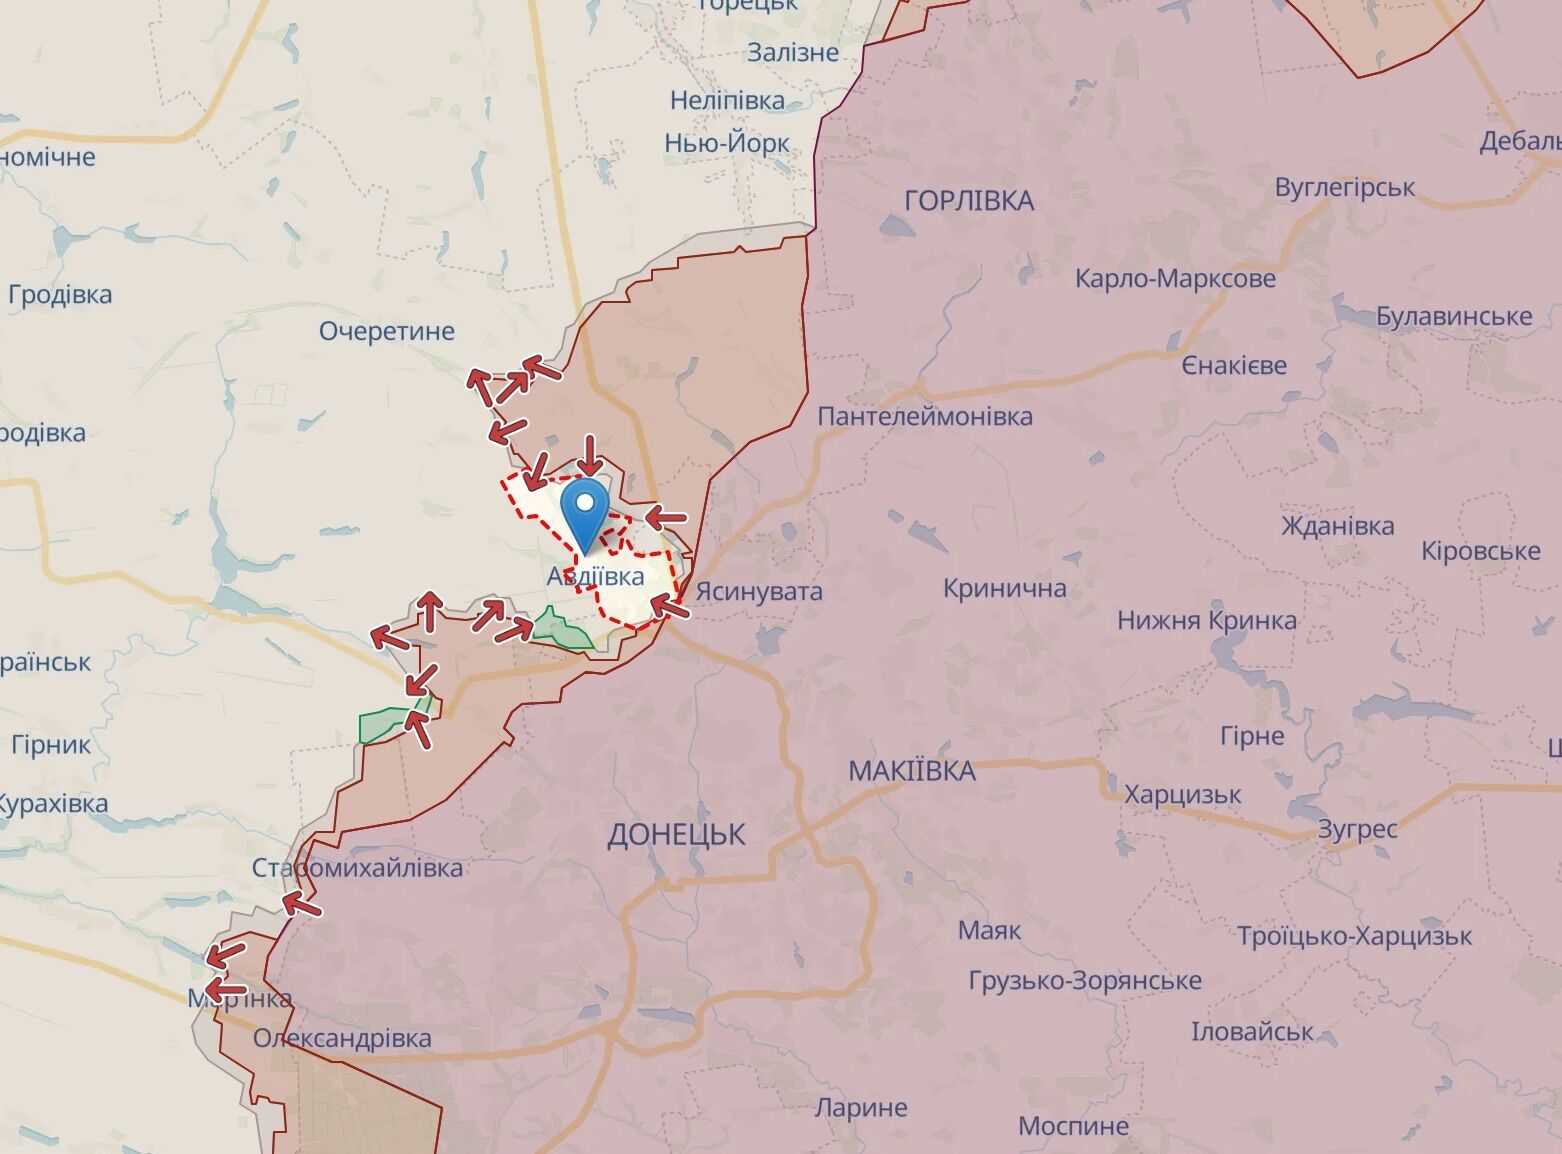 Ситуация под Авдеевкой в Донецкой области по состоянию на вечер 16 ноября